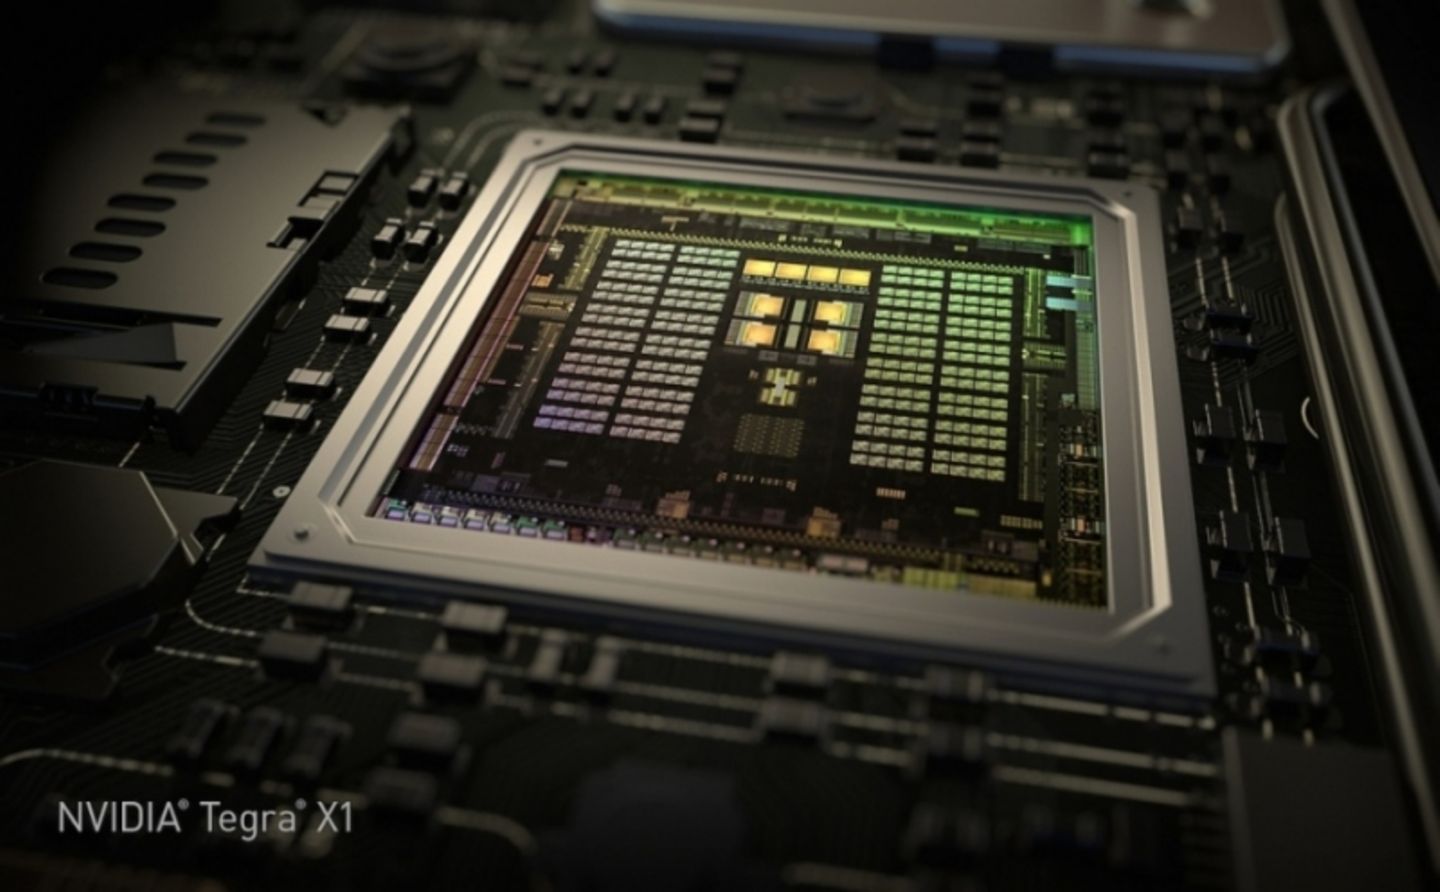 Nvidia Tegra X1 Chip